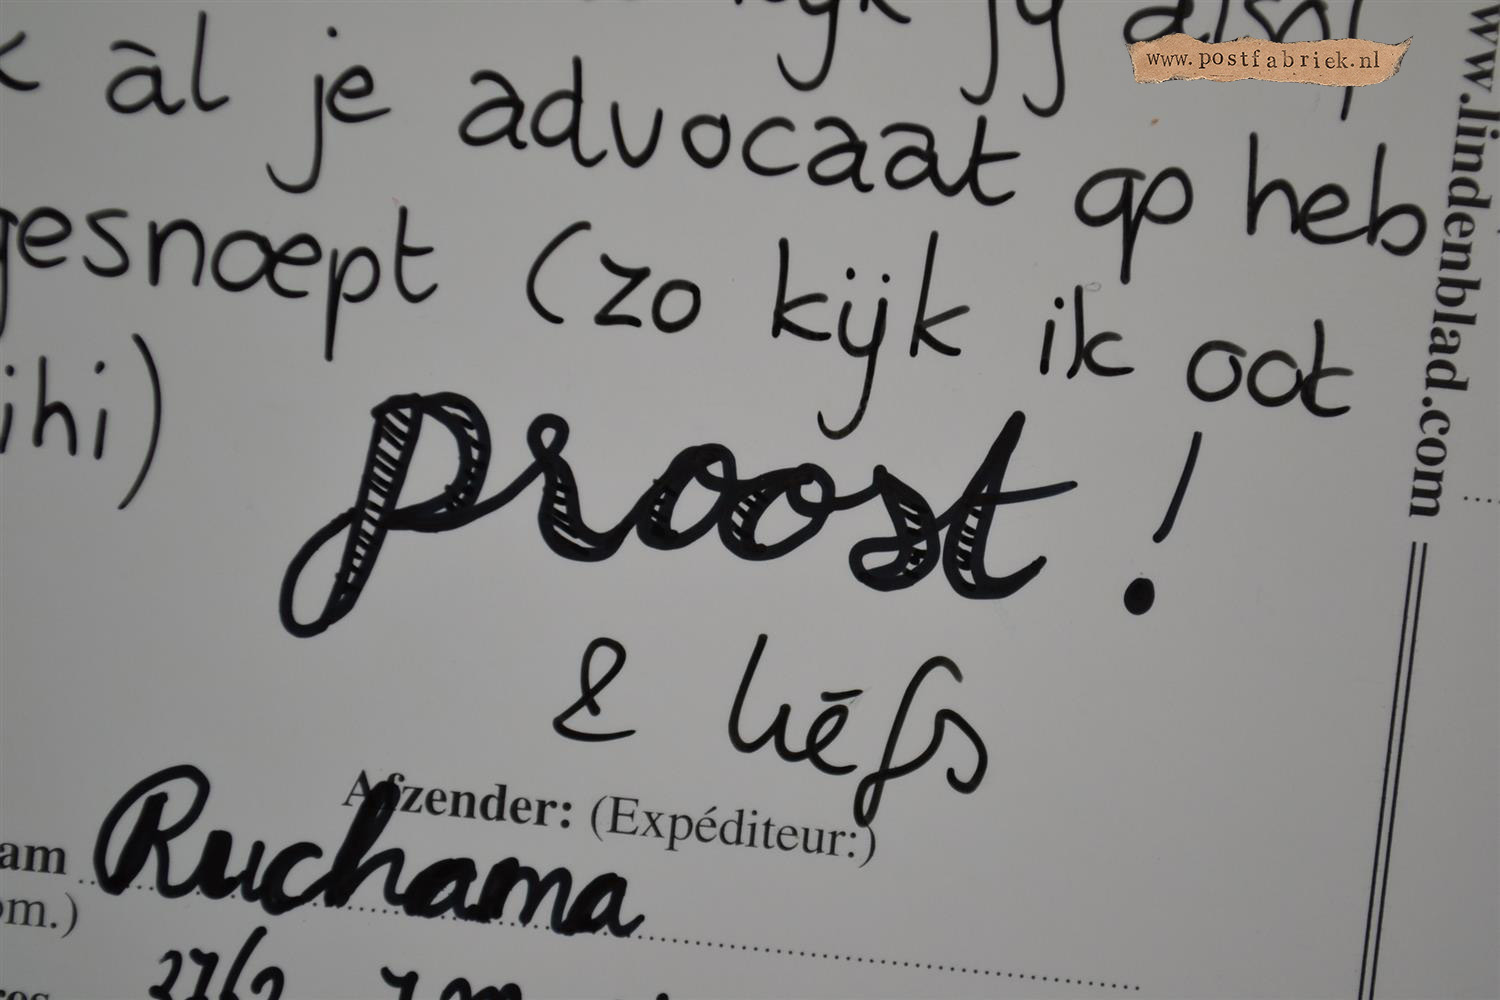 Spiksplinternieuw Hand Lettering (tips voor het tekenen van mooie letters) - Postfabriek RJ-42